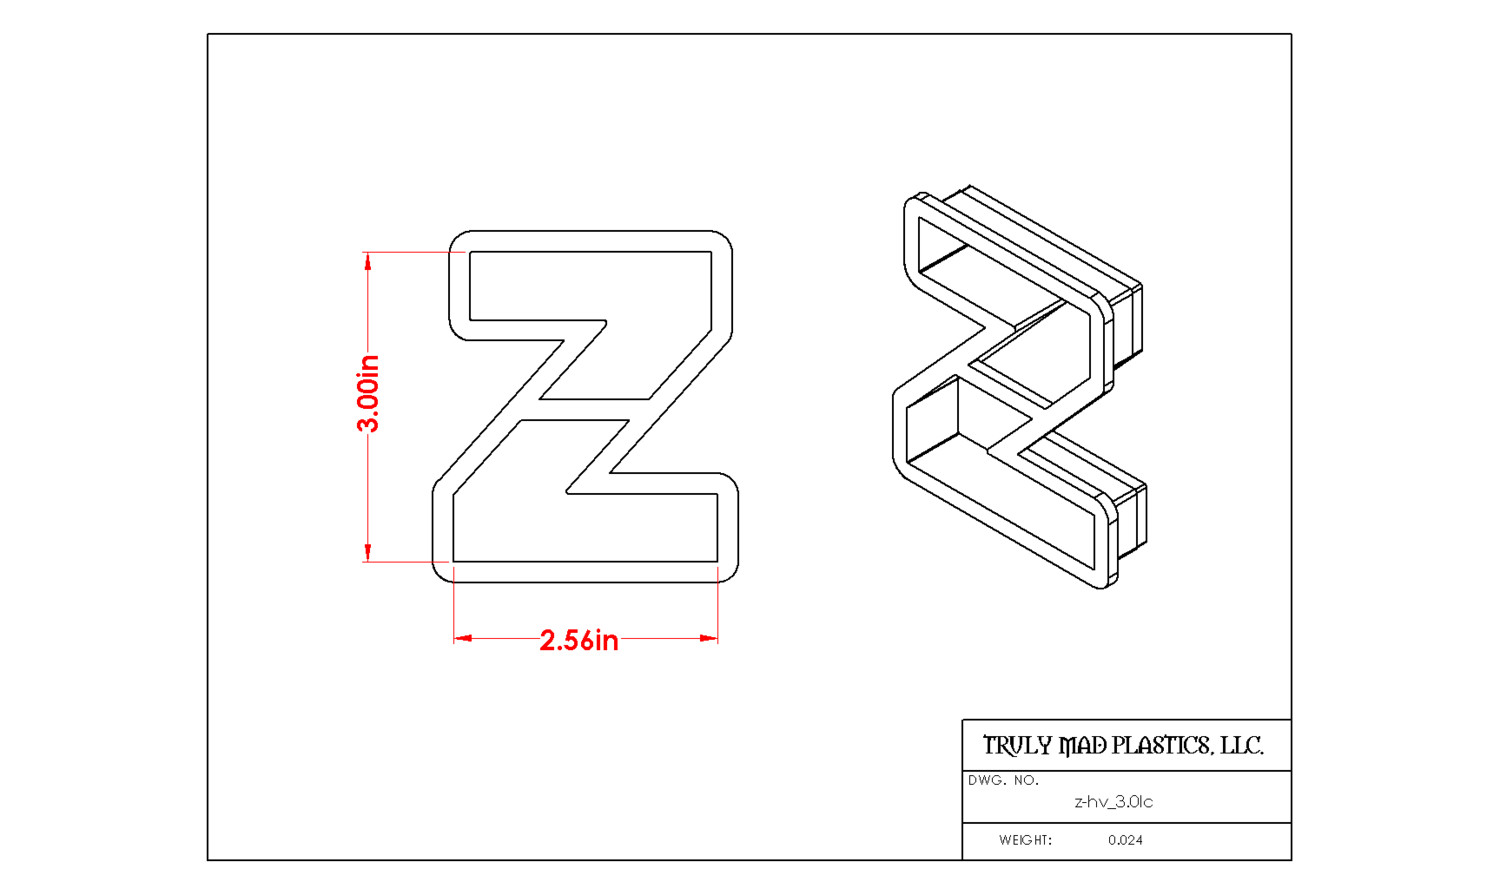 Helvetica "z" lower case 3.0"